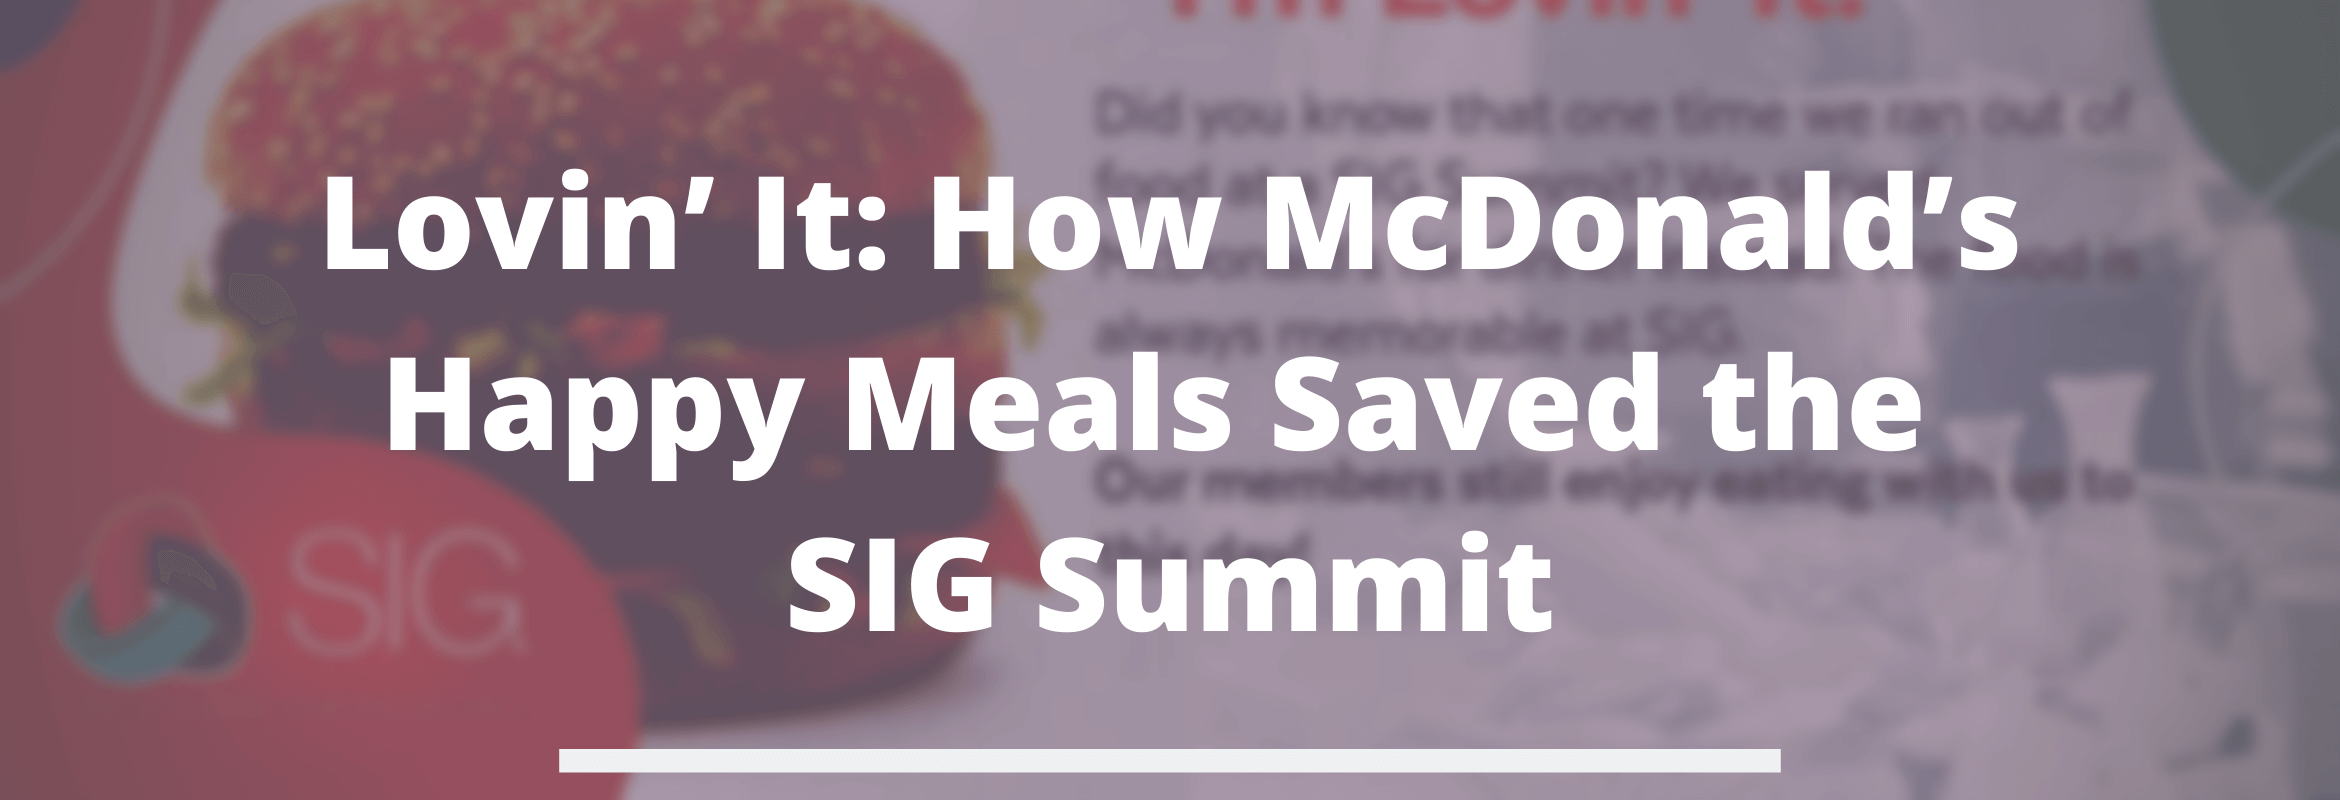 McDonald’s at the SIG Summit